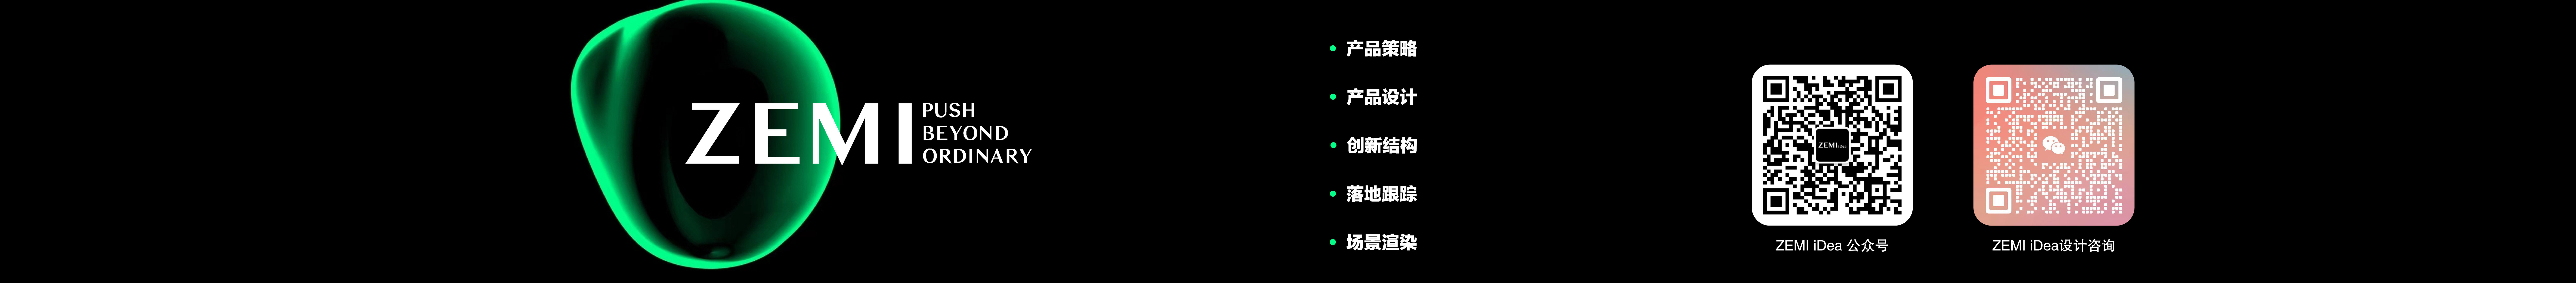 Banner profilu uživatele honfer zhang